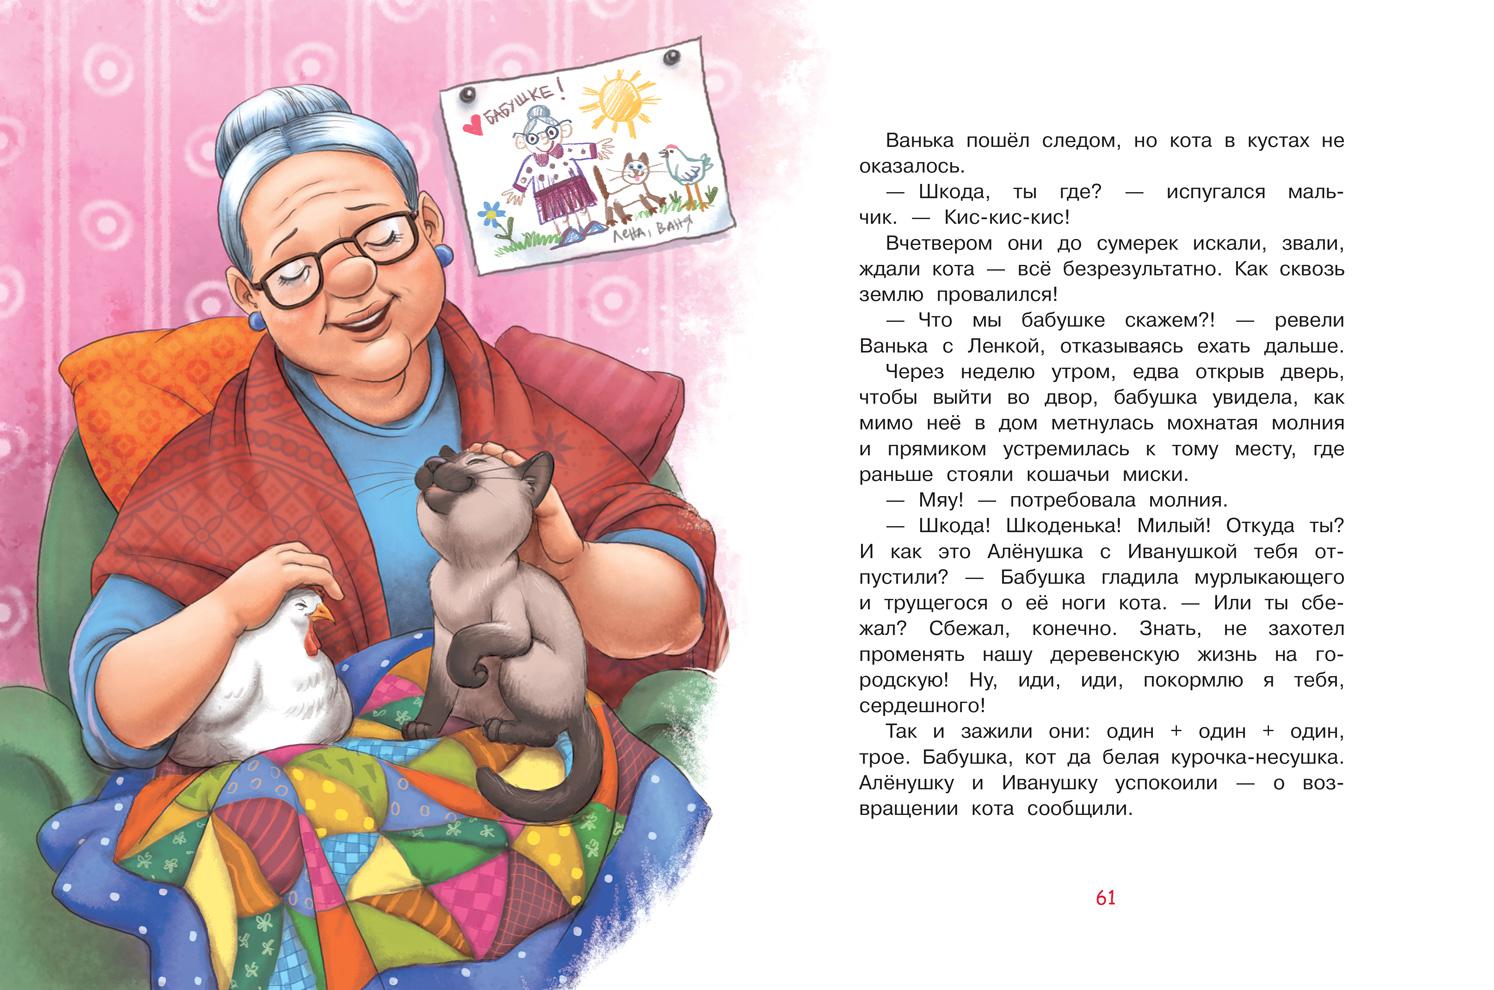 Бабушка можно у тебя пожить рассказ 125. Рассказ про бабушку. Hfpprfp j ,f,EIRT. Истории бабушки. Небольшой рассказ о бабушке.